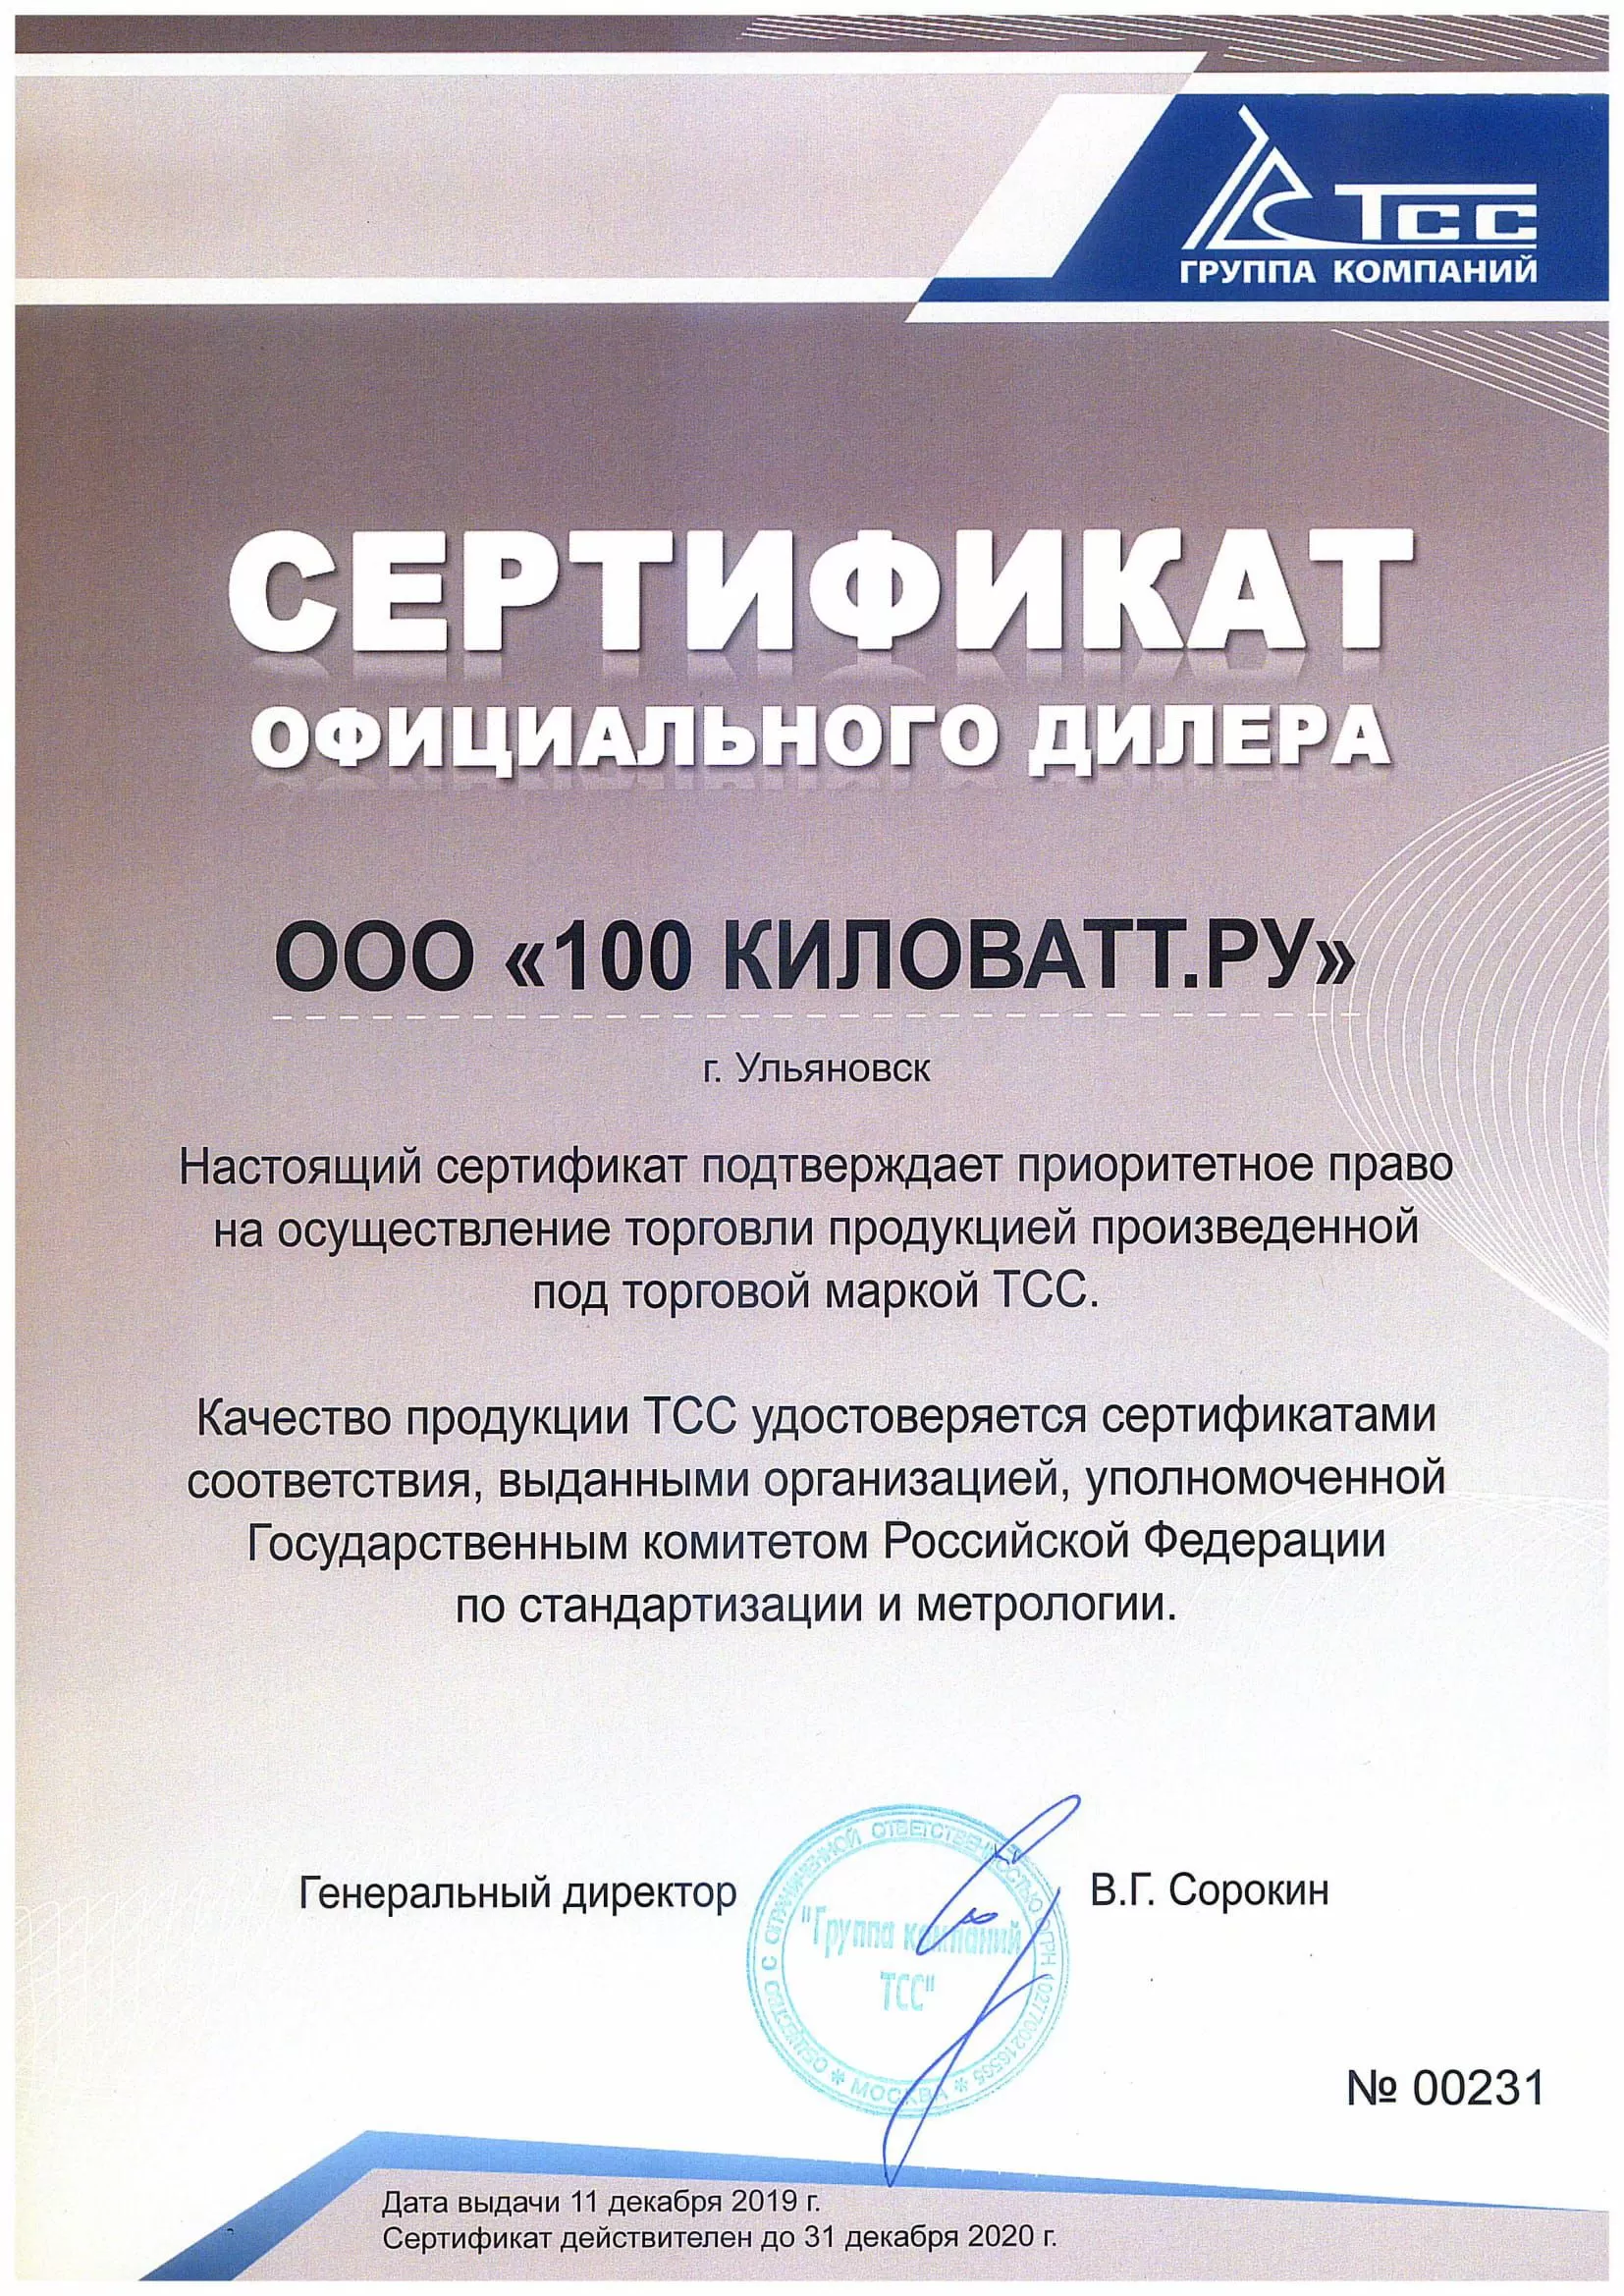 Сертификат дилера ТСС